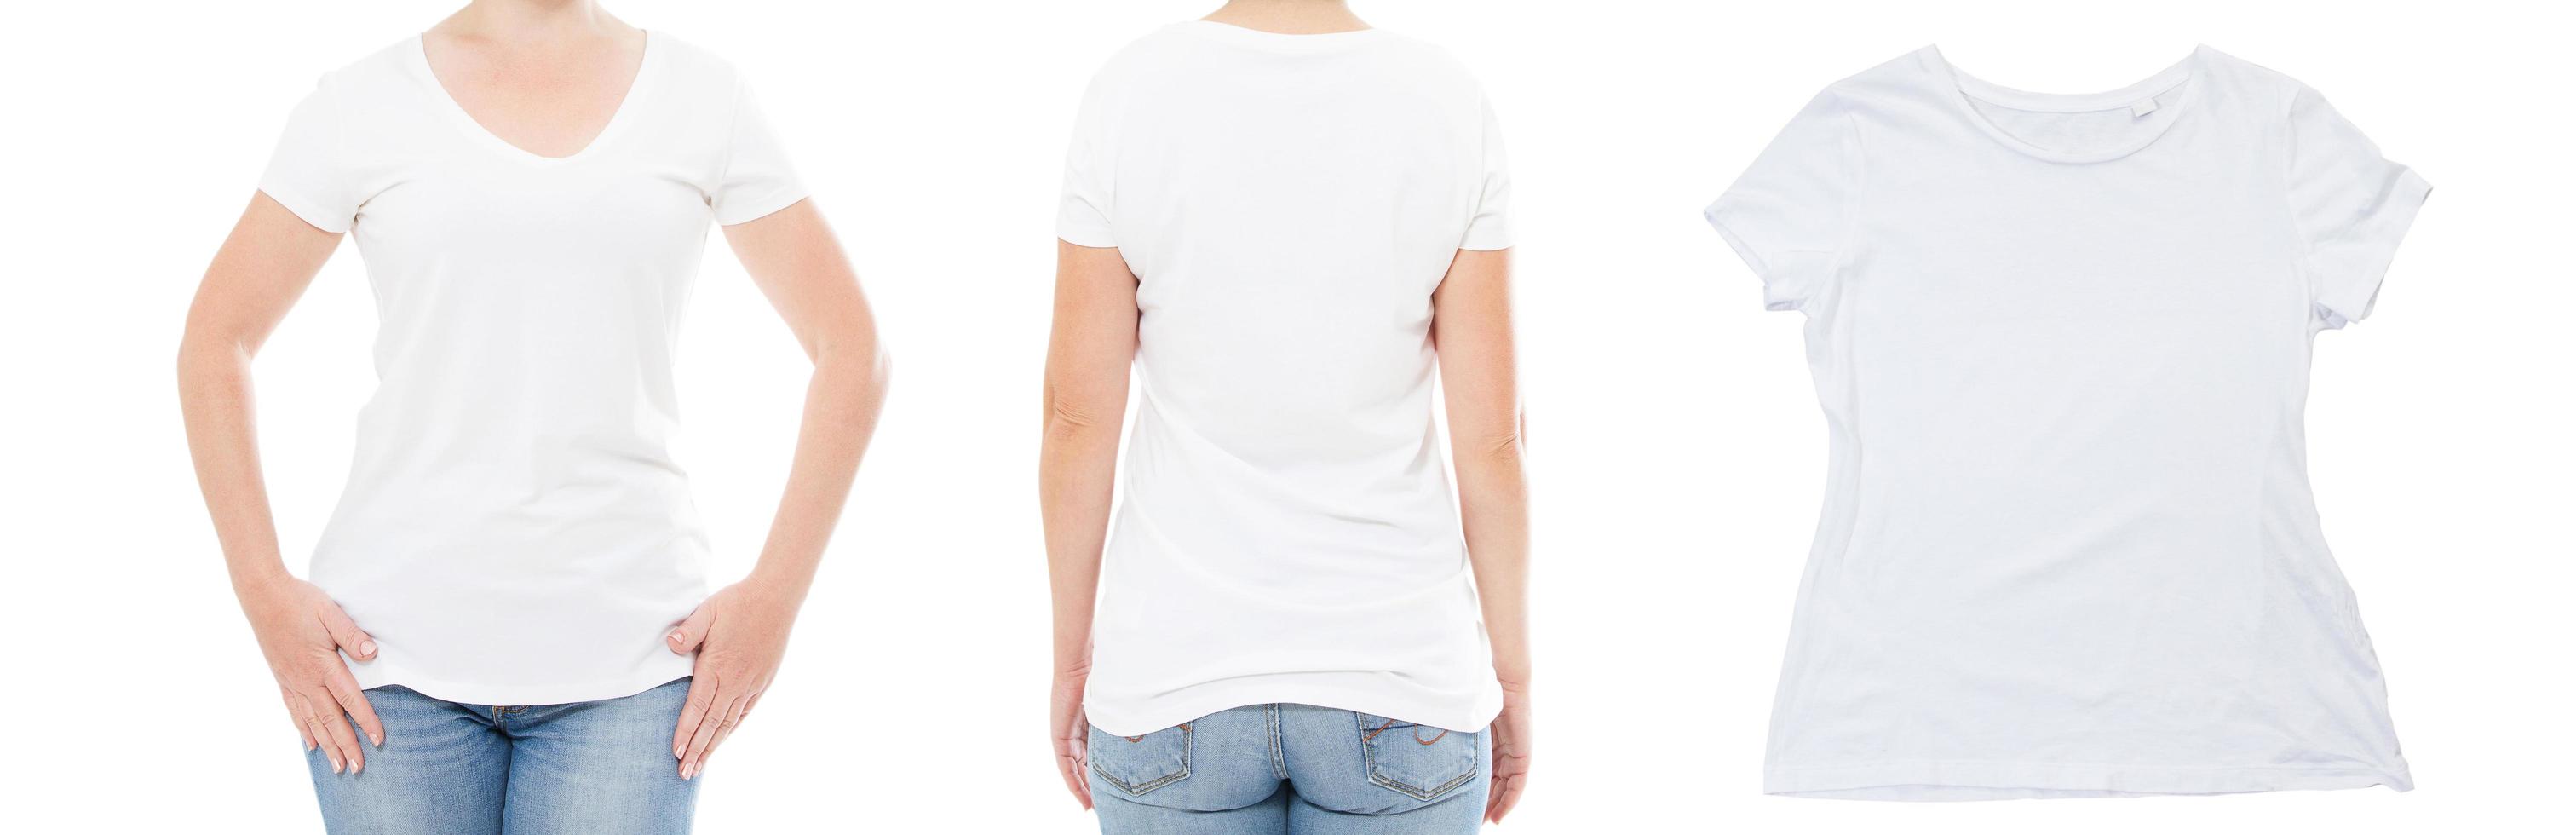 dame en t-shirt - espace de copie vue avant et arrière, t-shirt blanc vide gros plan arrière-plan photo